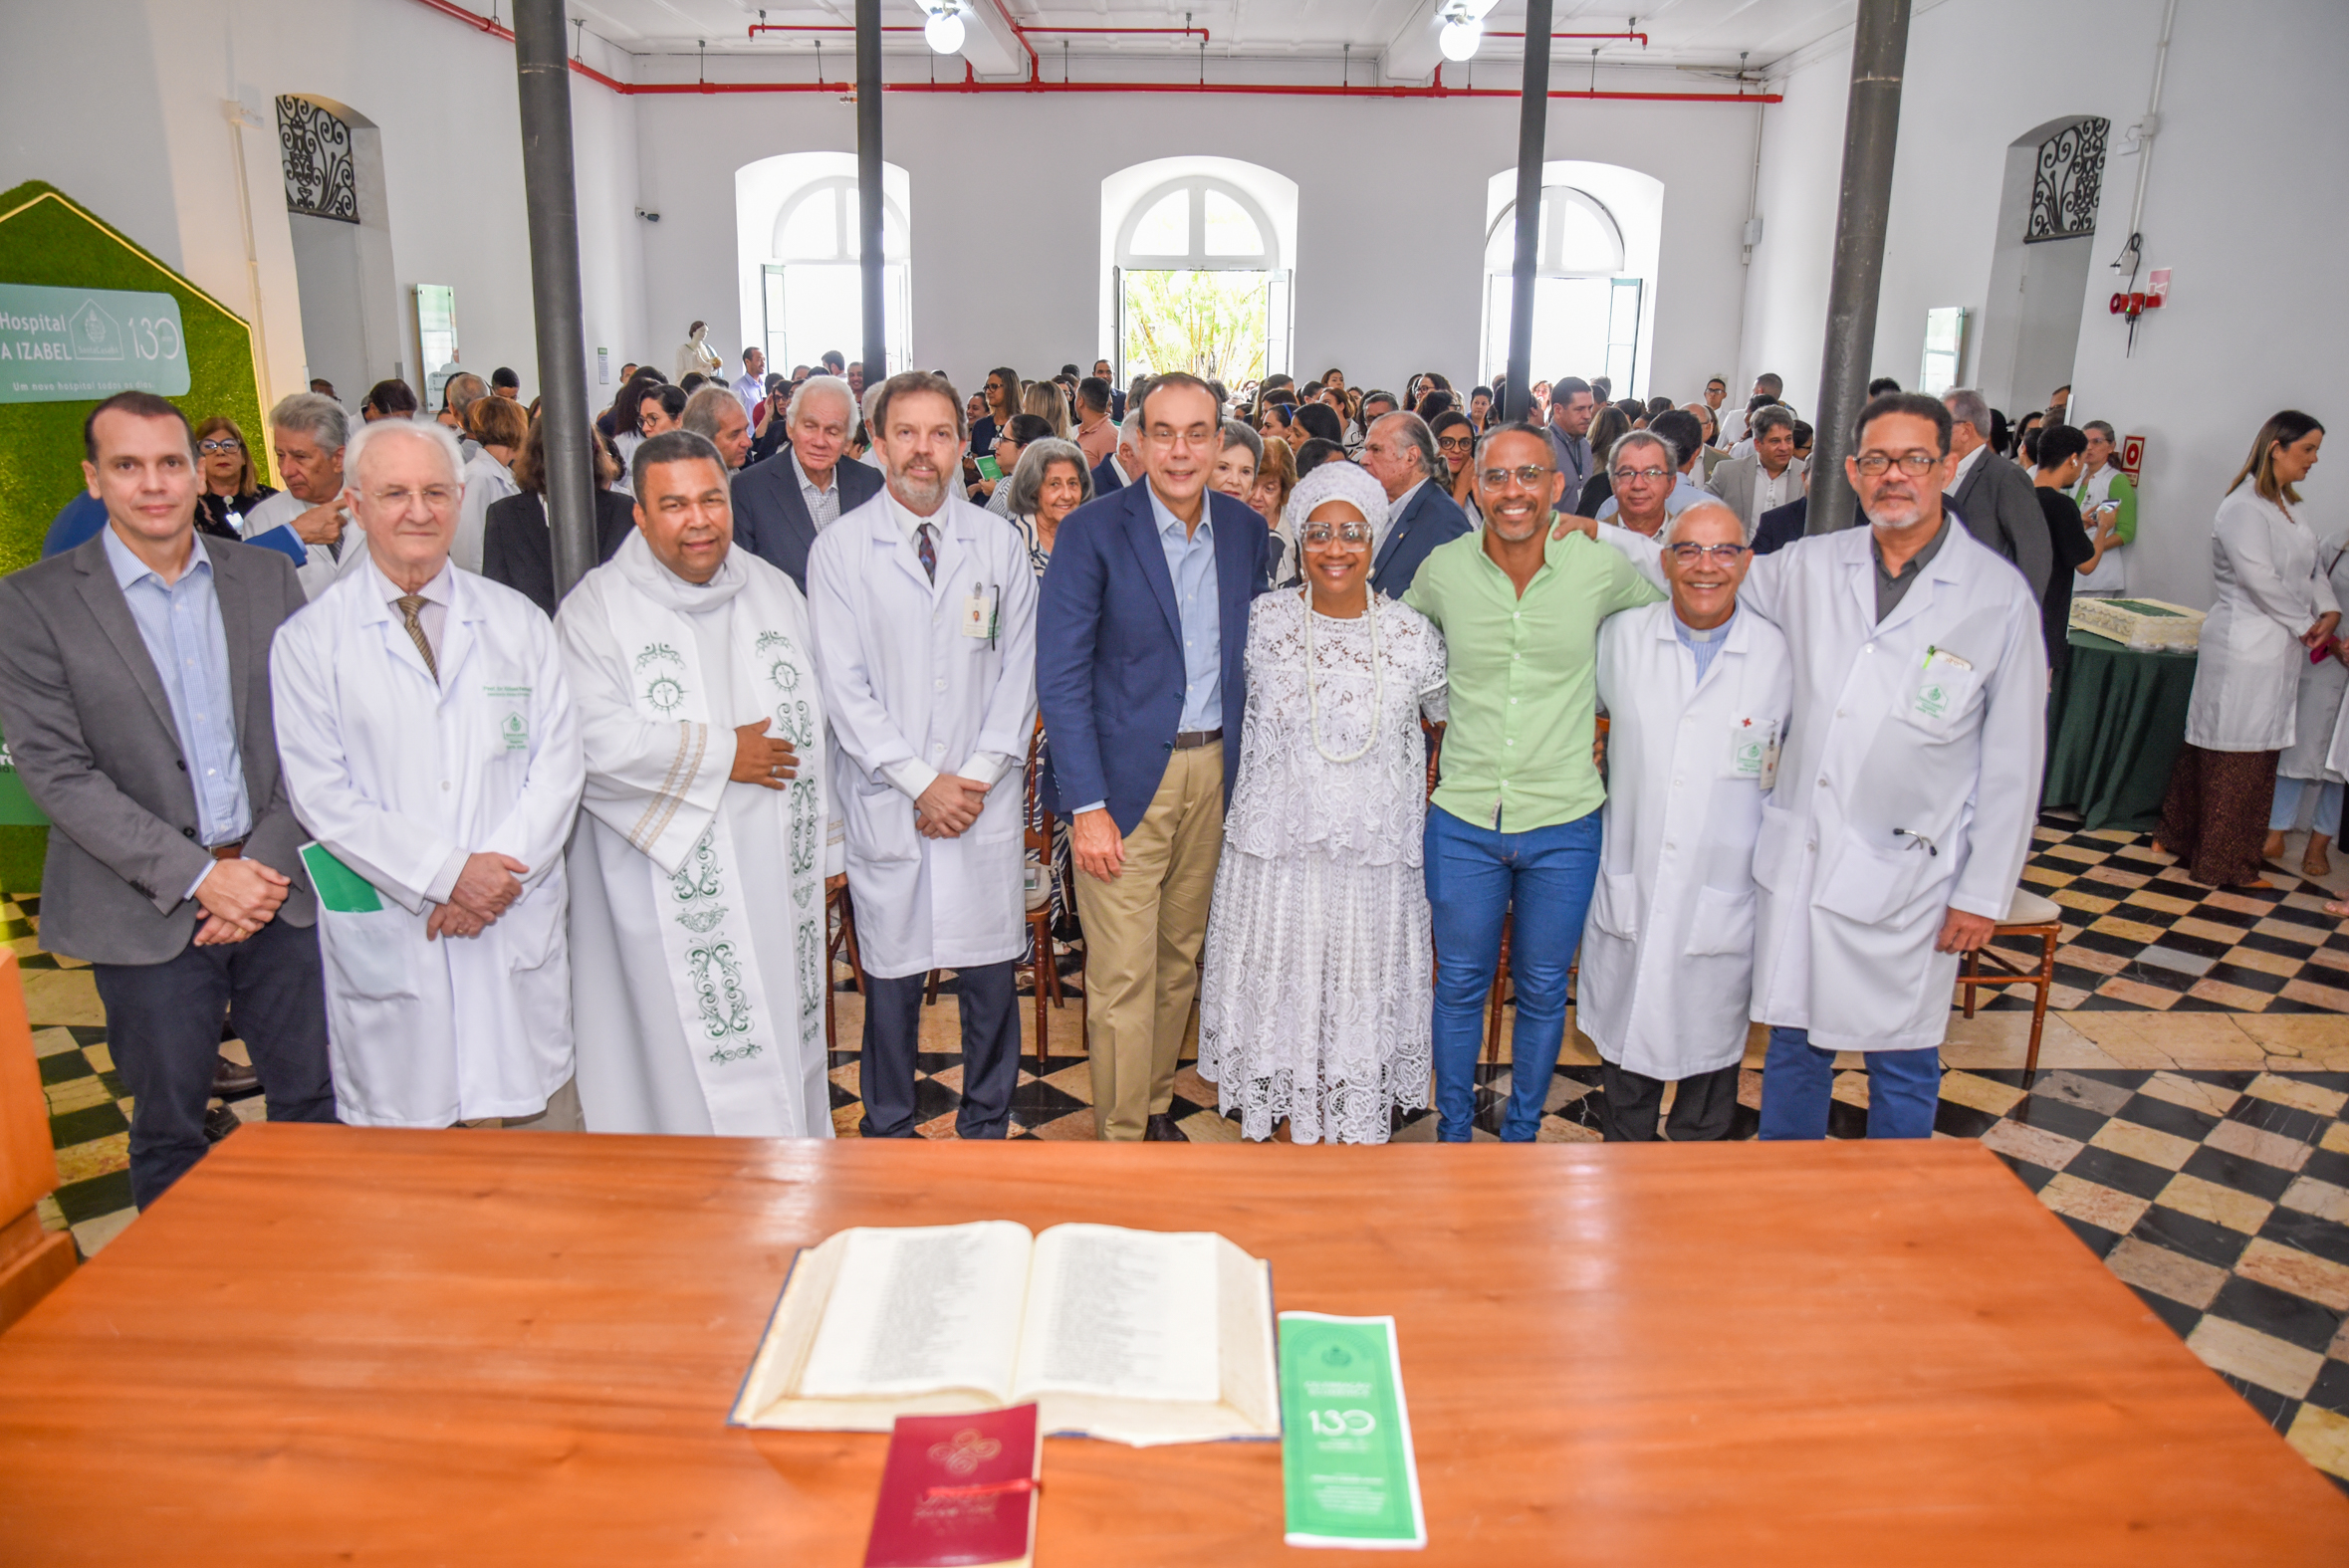 Aos 130 anos, Hospital Santa Izabel comemora avanço na oferta de cuidado seguro, completo e qualificado